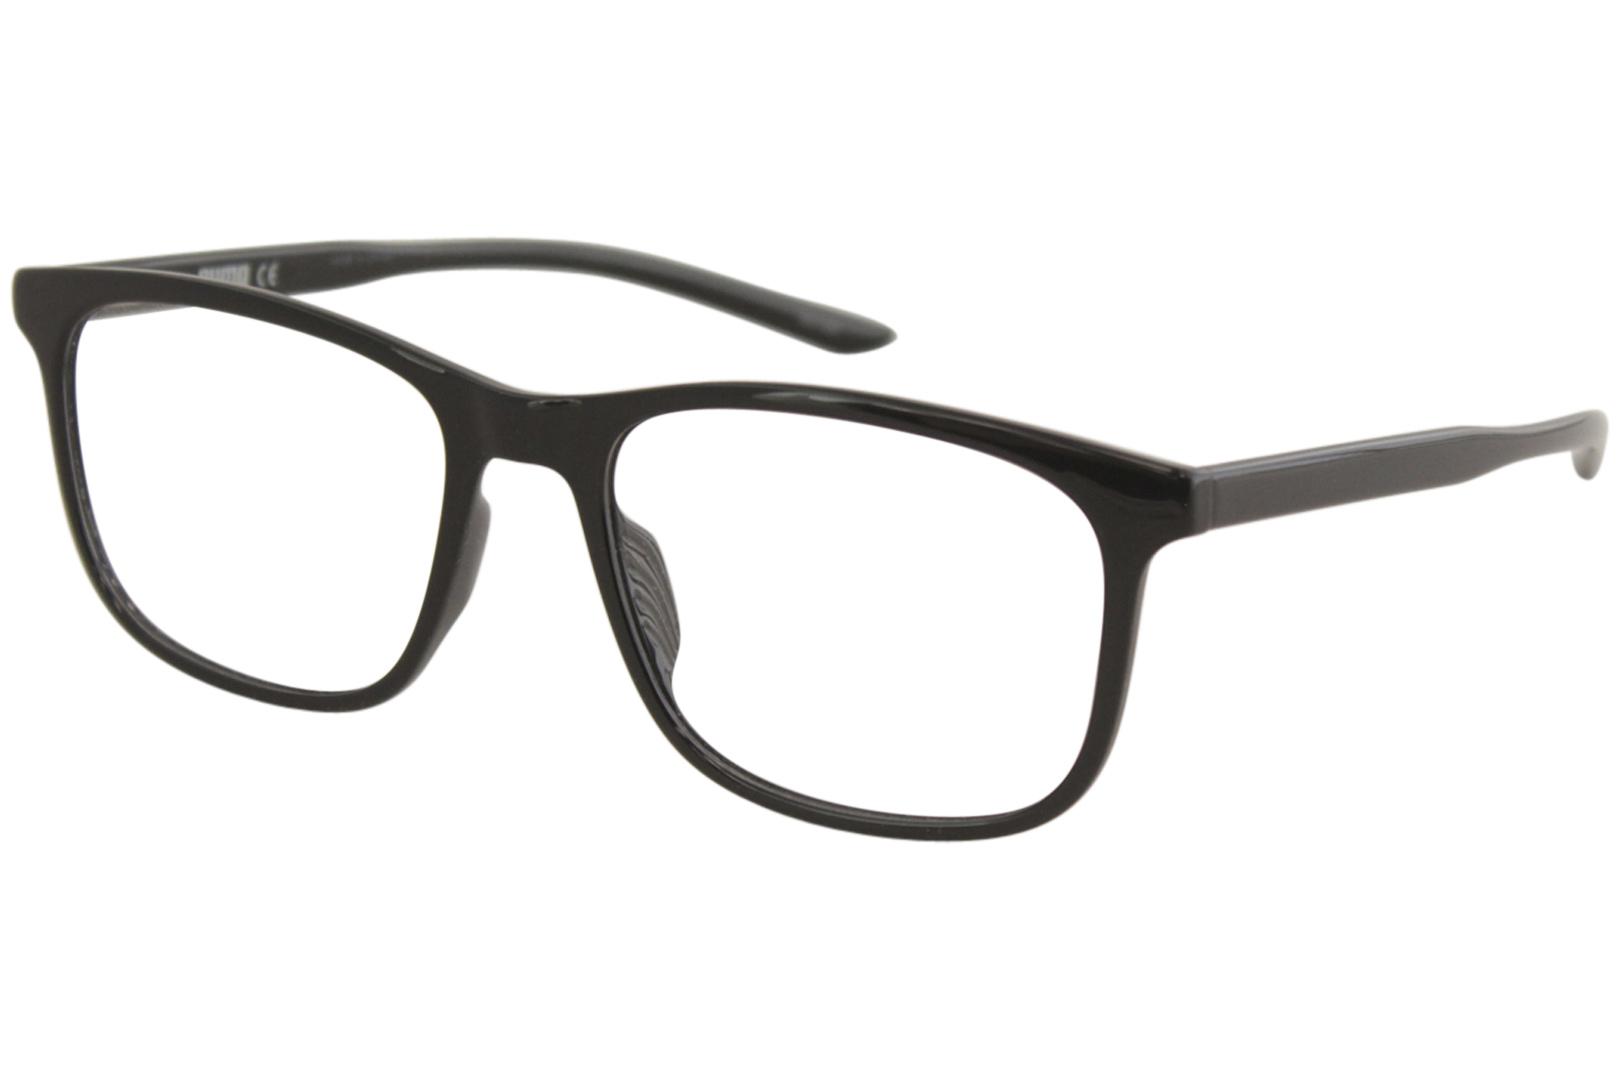 puma optical glasses